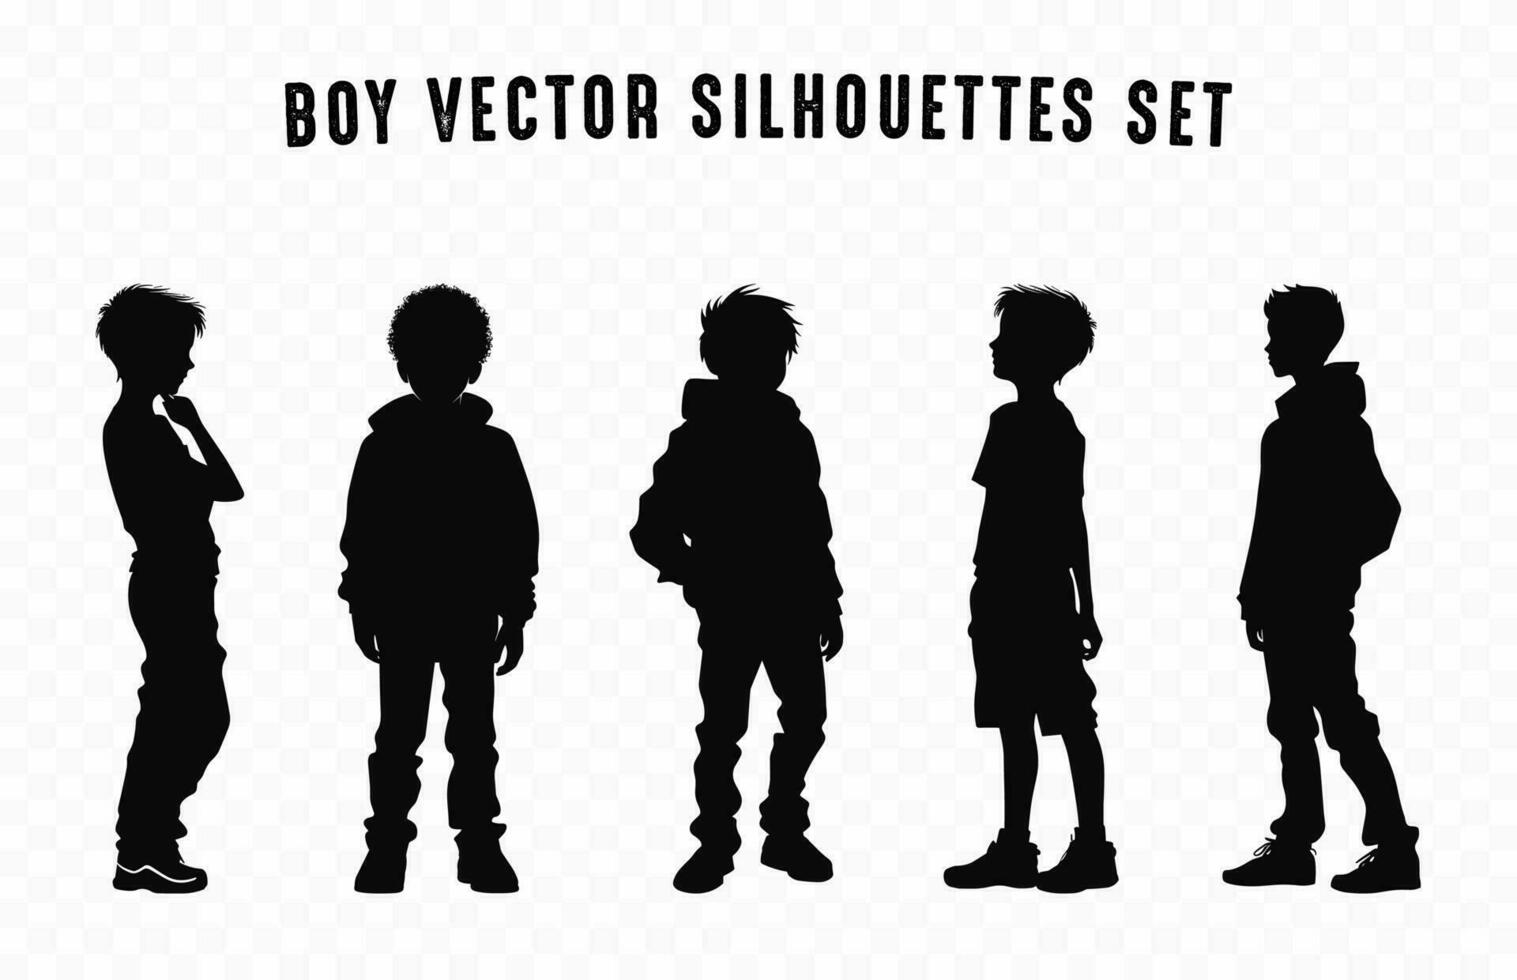 jongen silhouetten vector bundel, reeks van tiener- jongen silhouet in verschillend poses